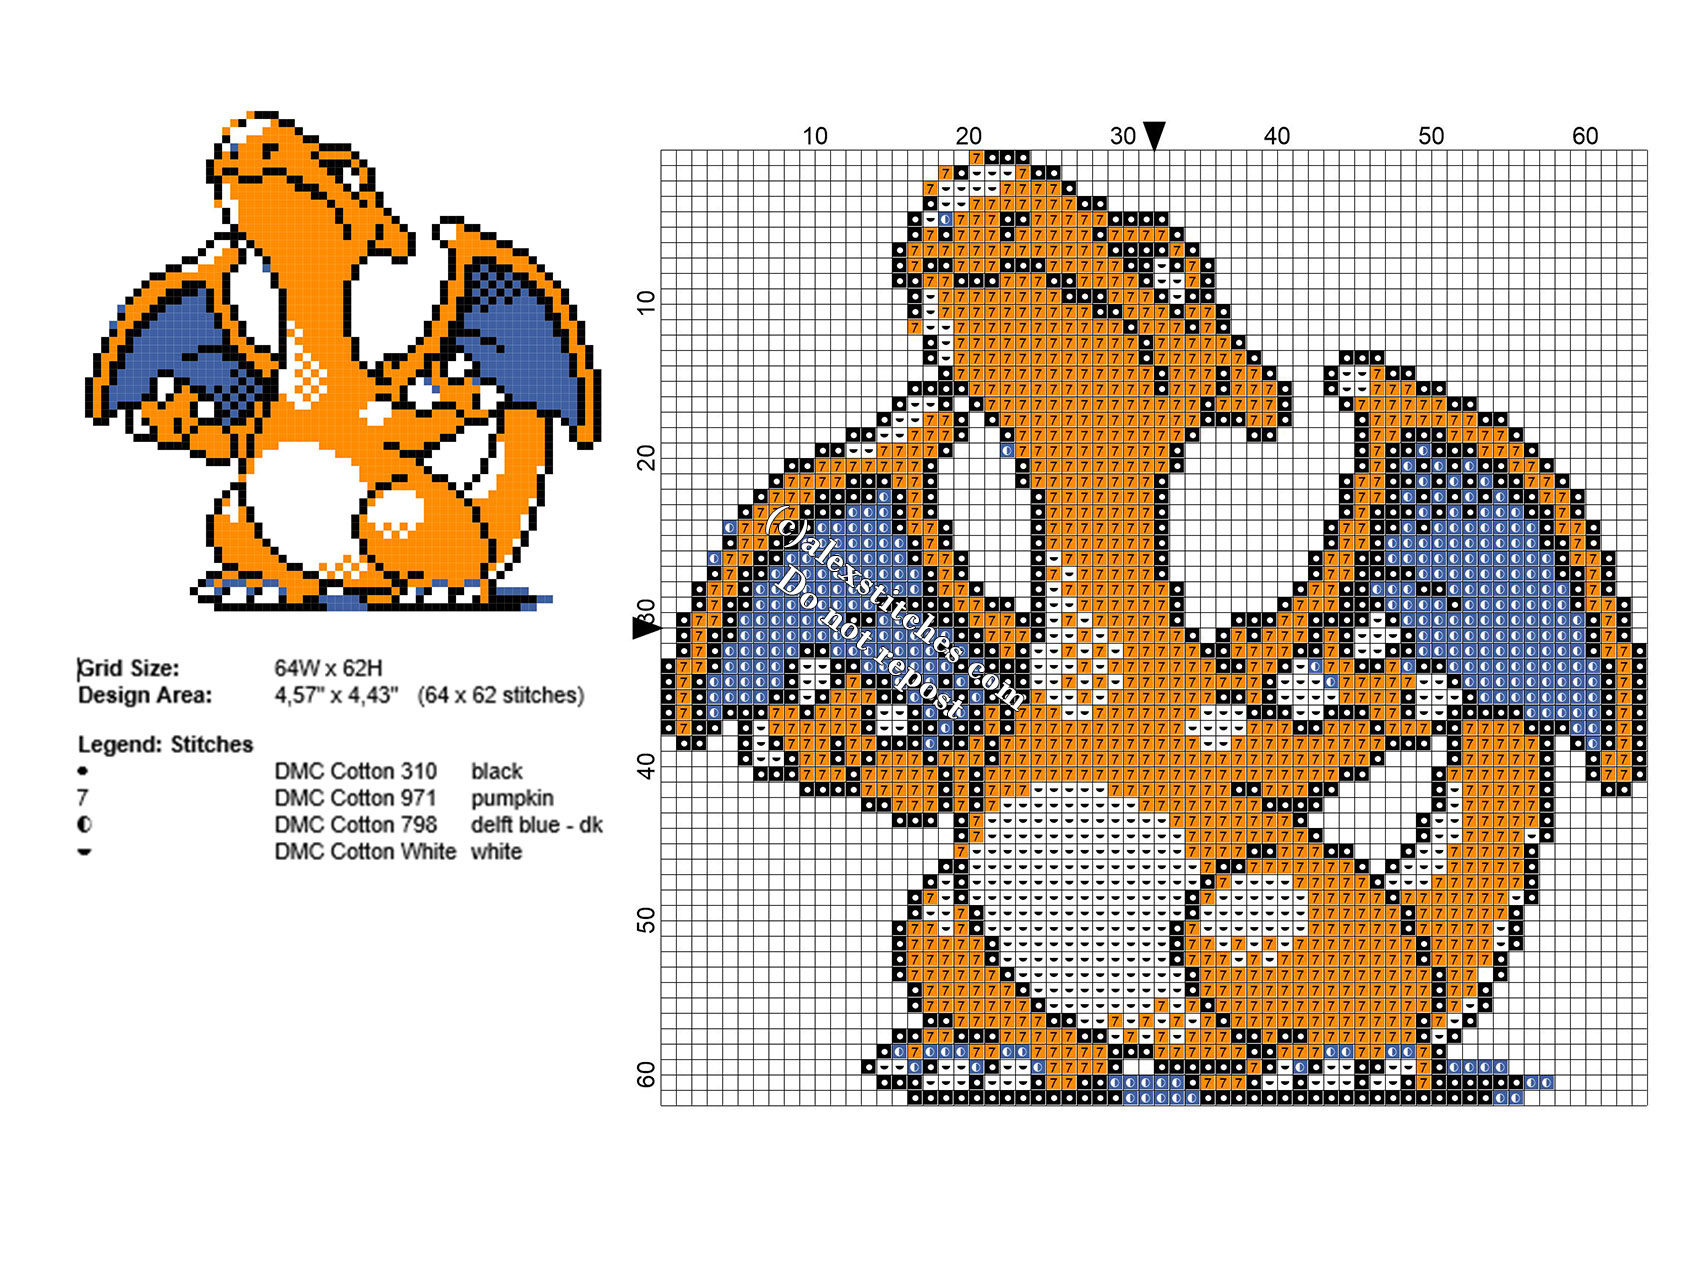 Charizard Pokemon small cross stitch pattern 64 x 62 stitches 4 DMC threads